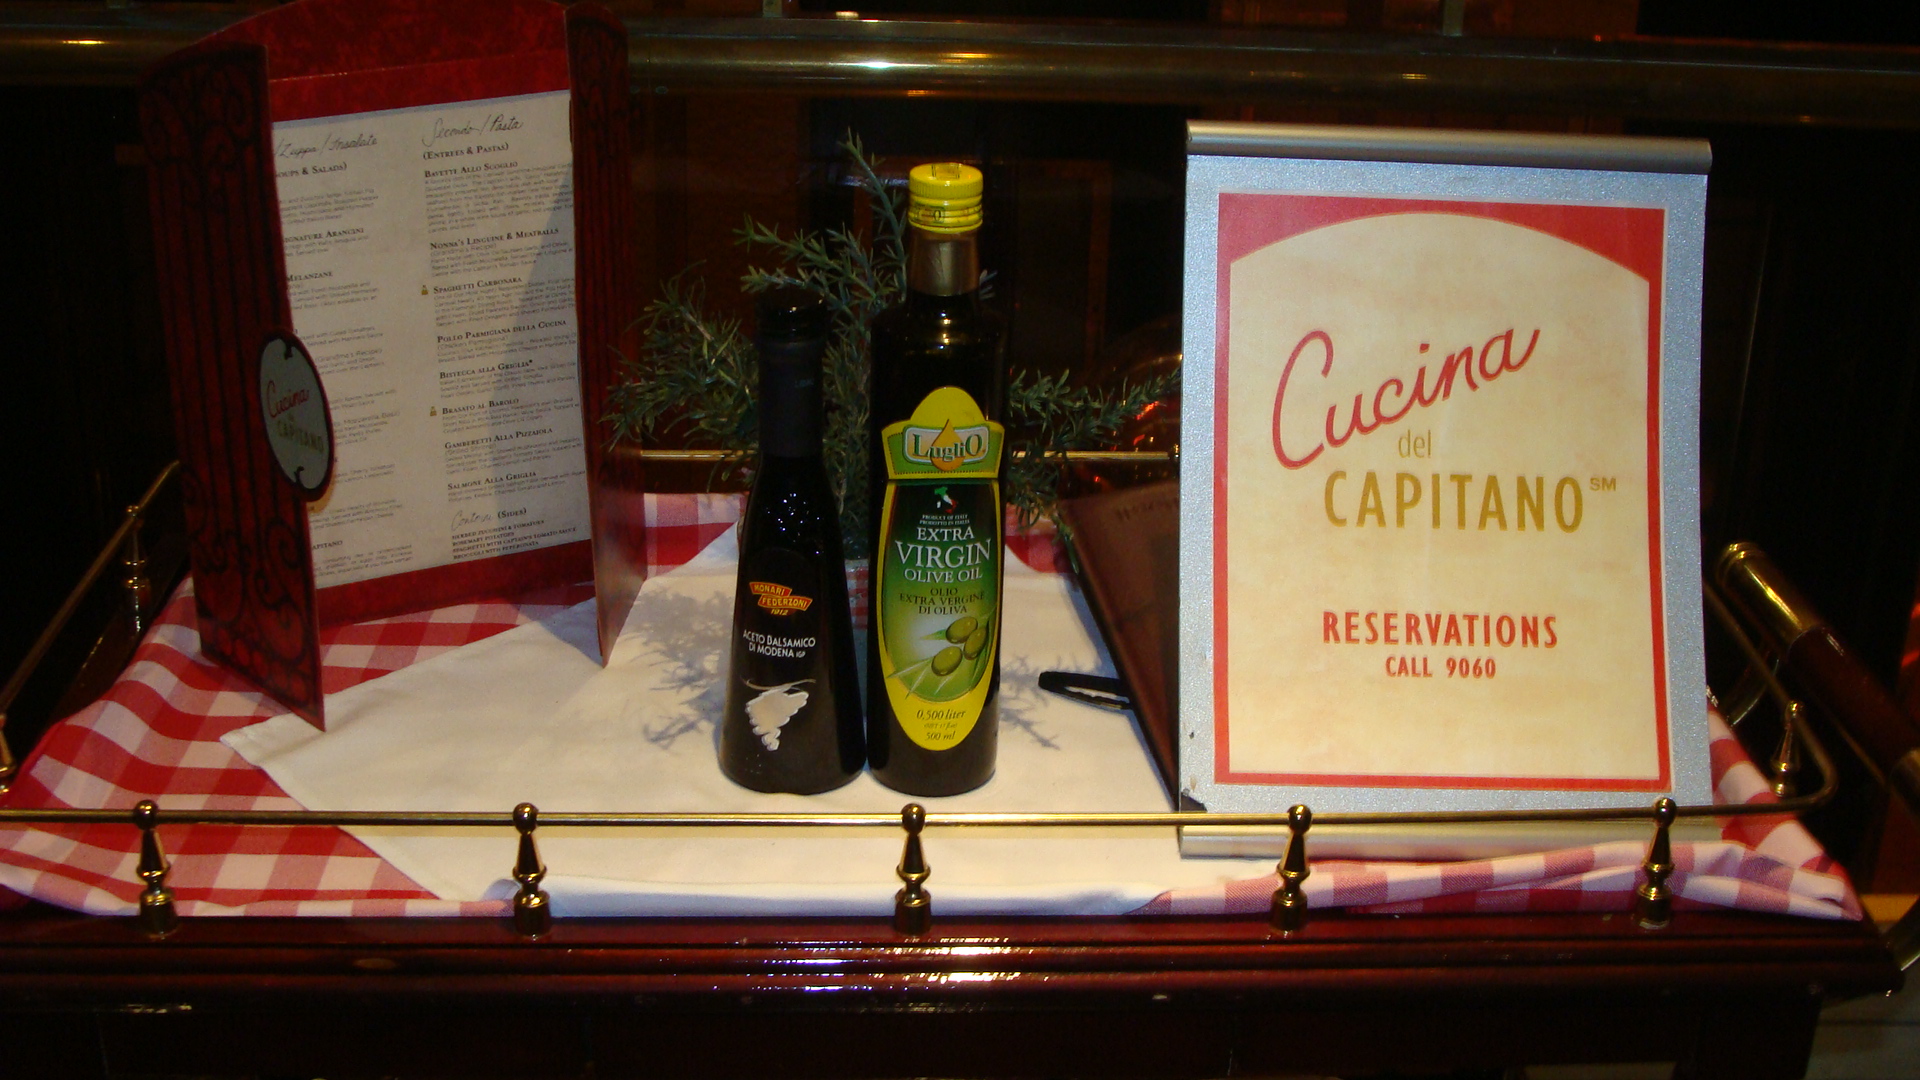 Cucina Del Capitano reservations